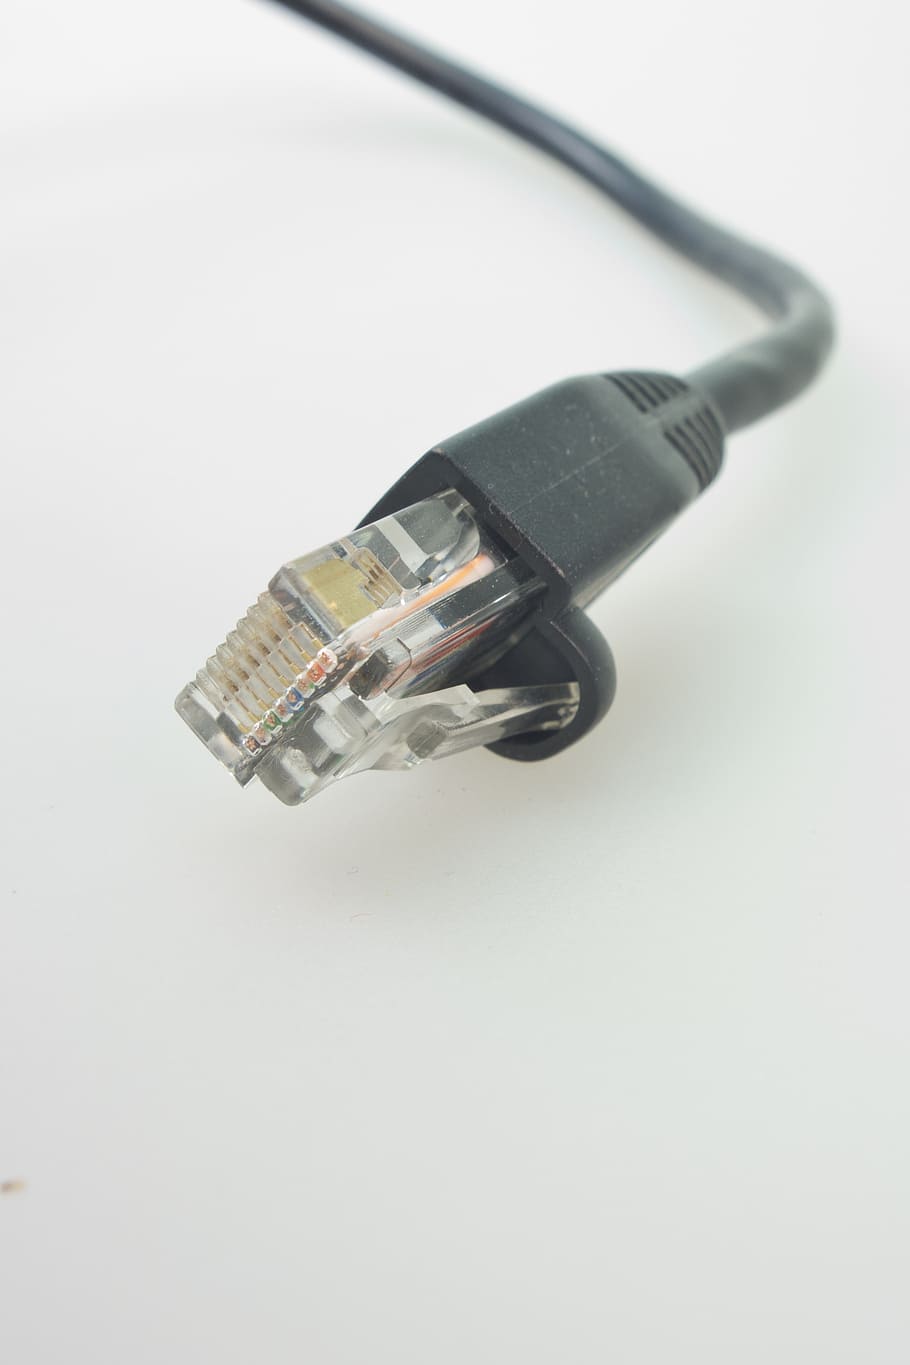 cabos de rede, rj, plugue, cabo de remendo, rede, cabo, linha, processamento de dados, conexão, conector de rede